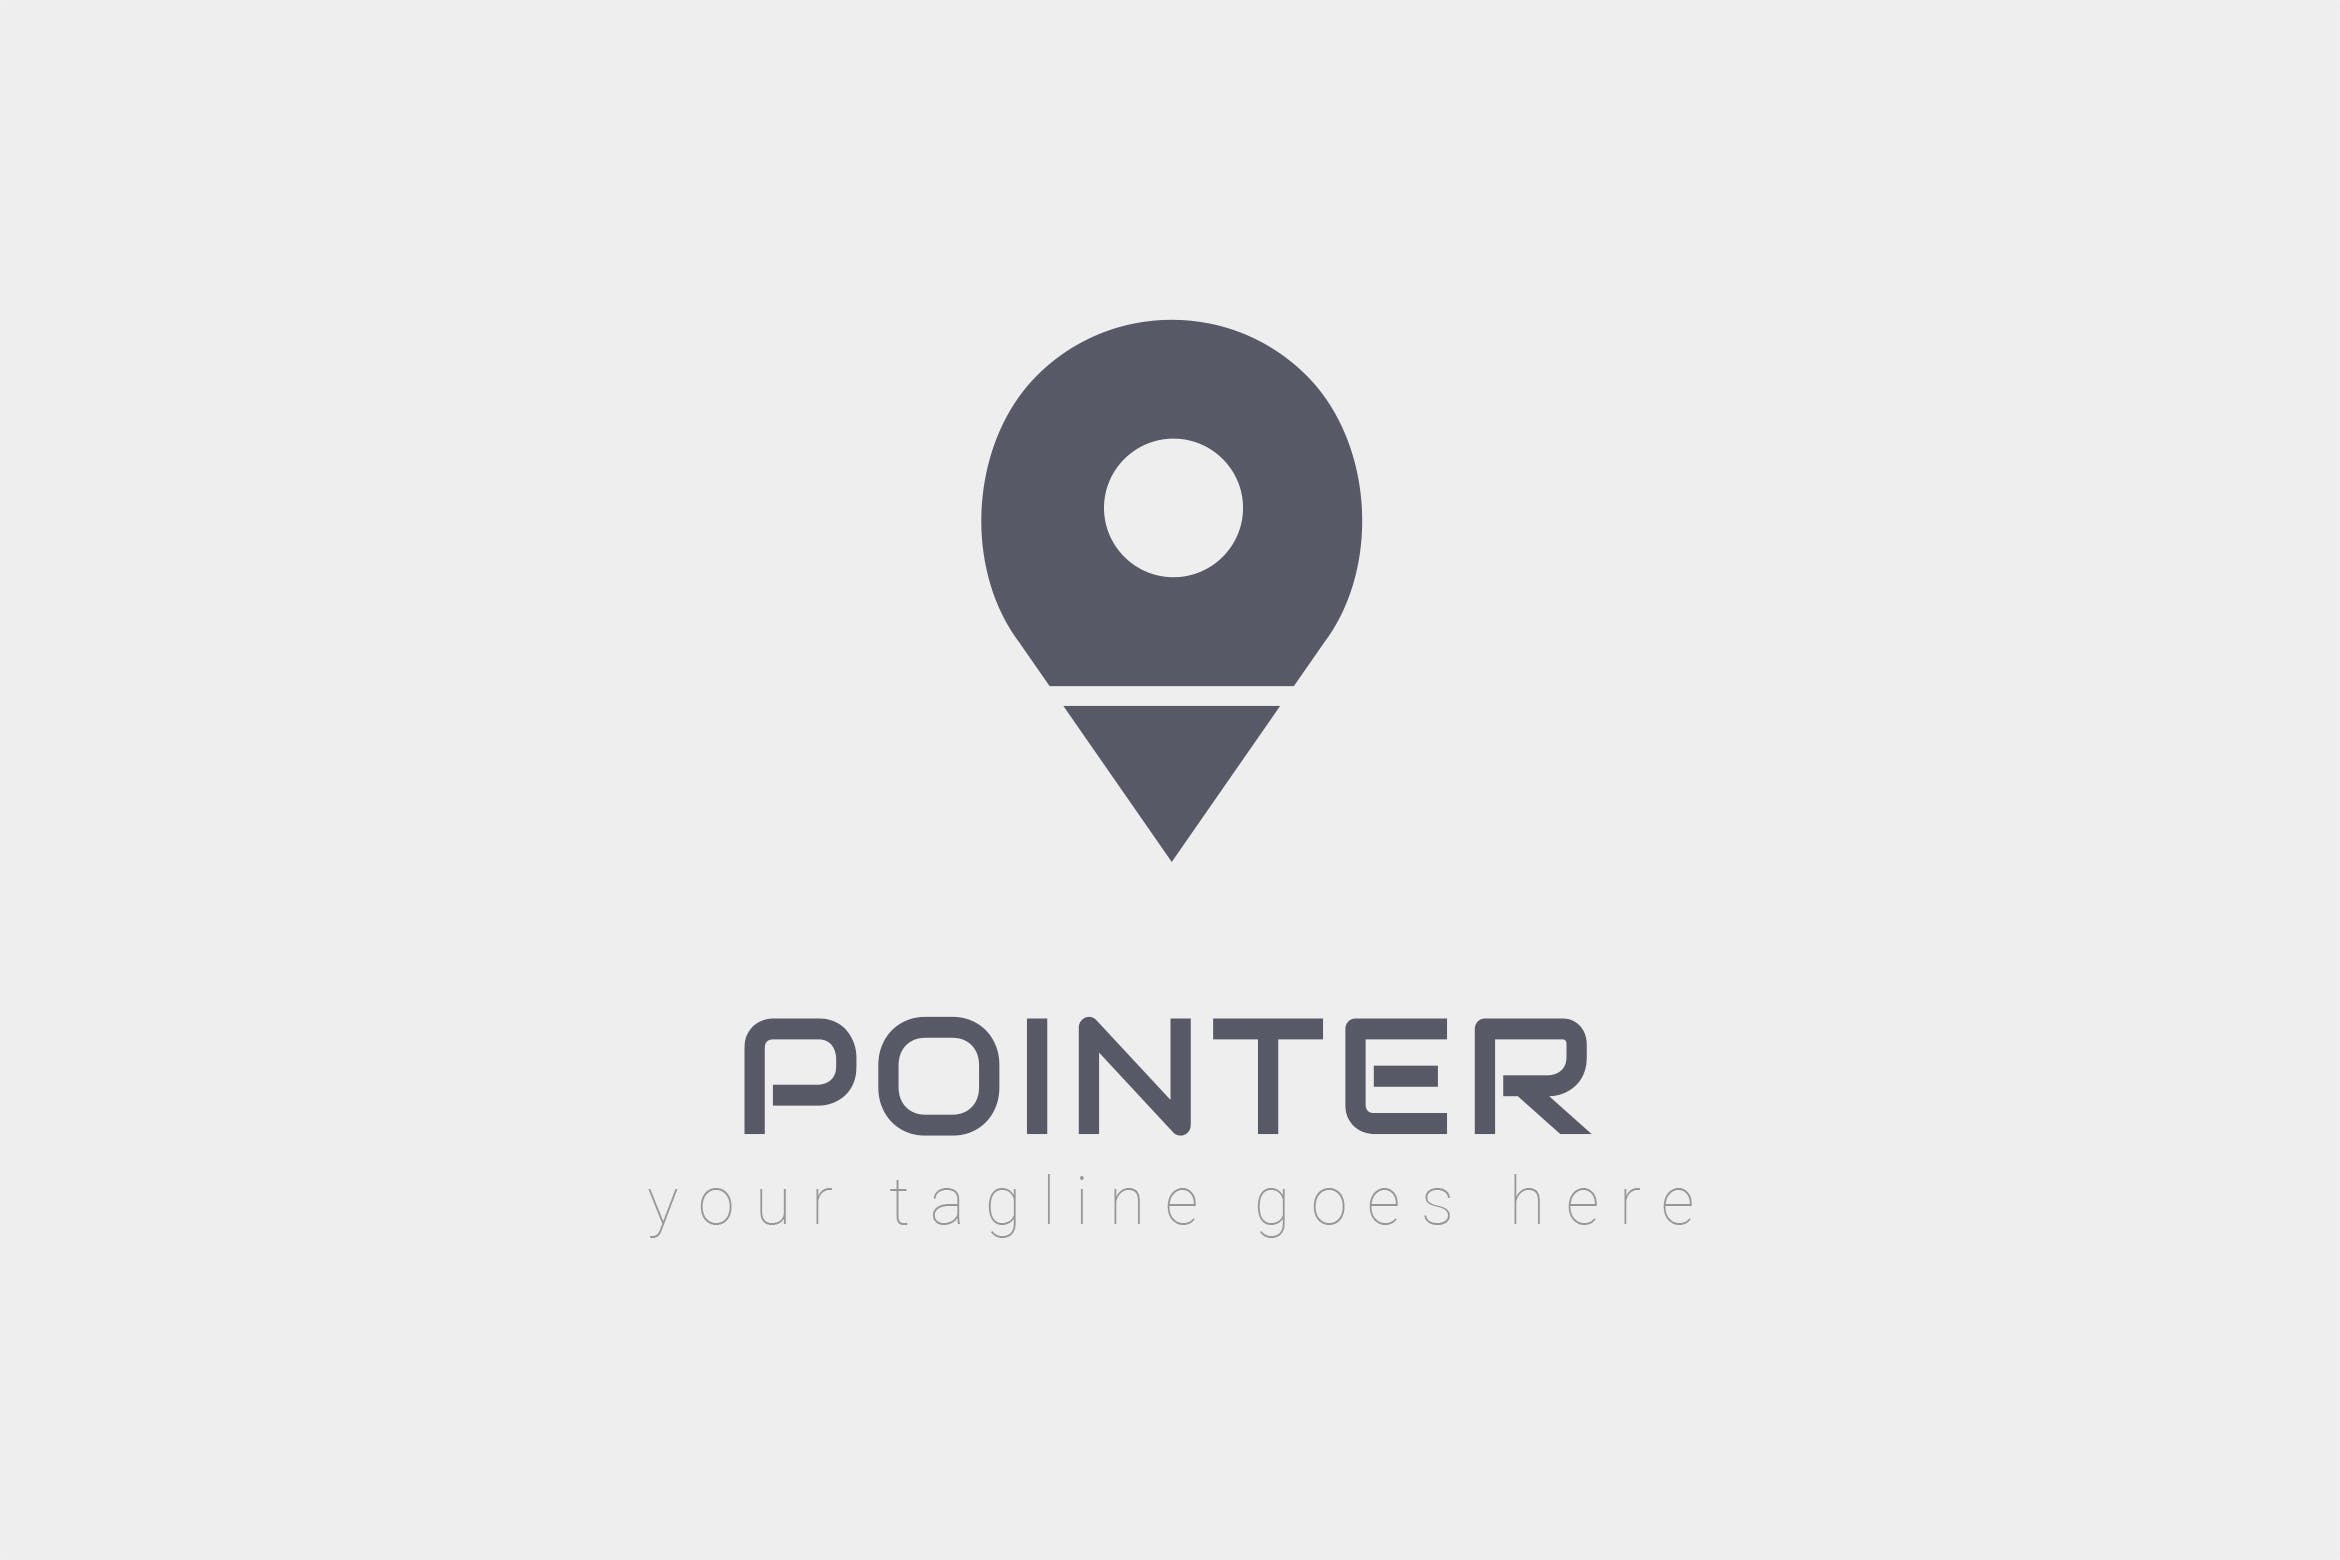 旅游/地图品牌Logo设计蚂蚁素材精选模板 Pointer – Logo Design插图